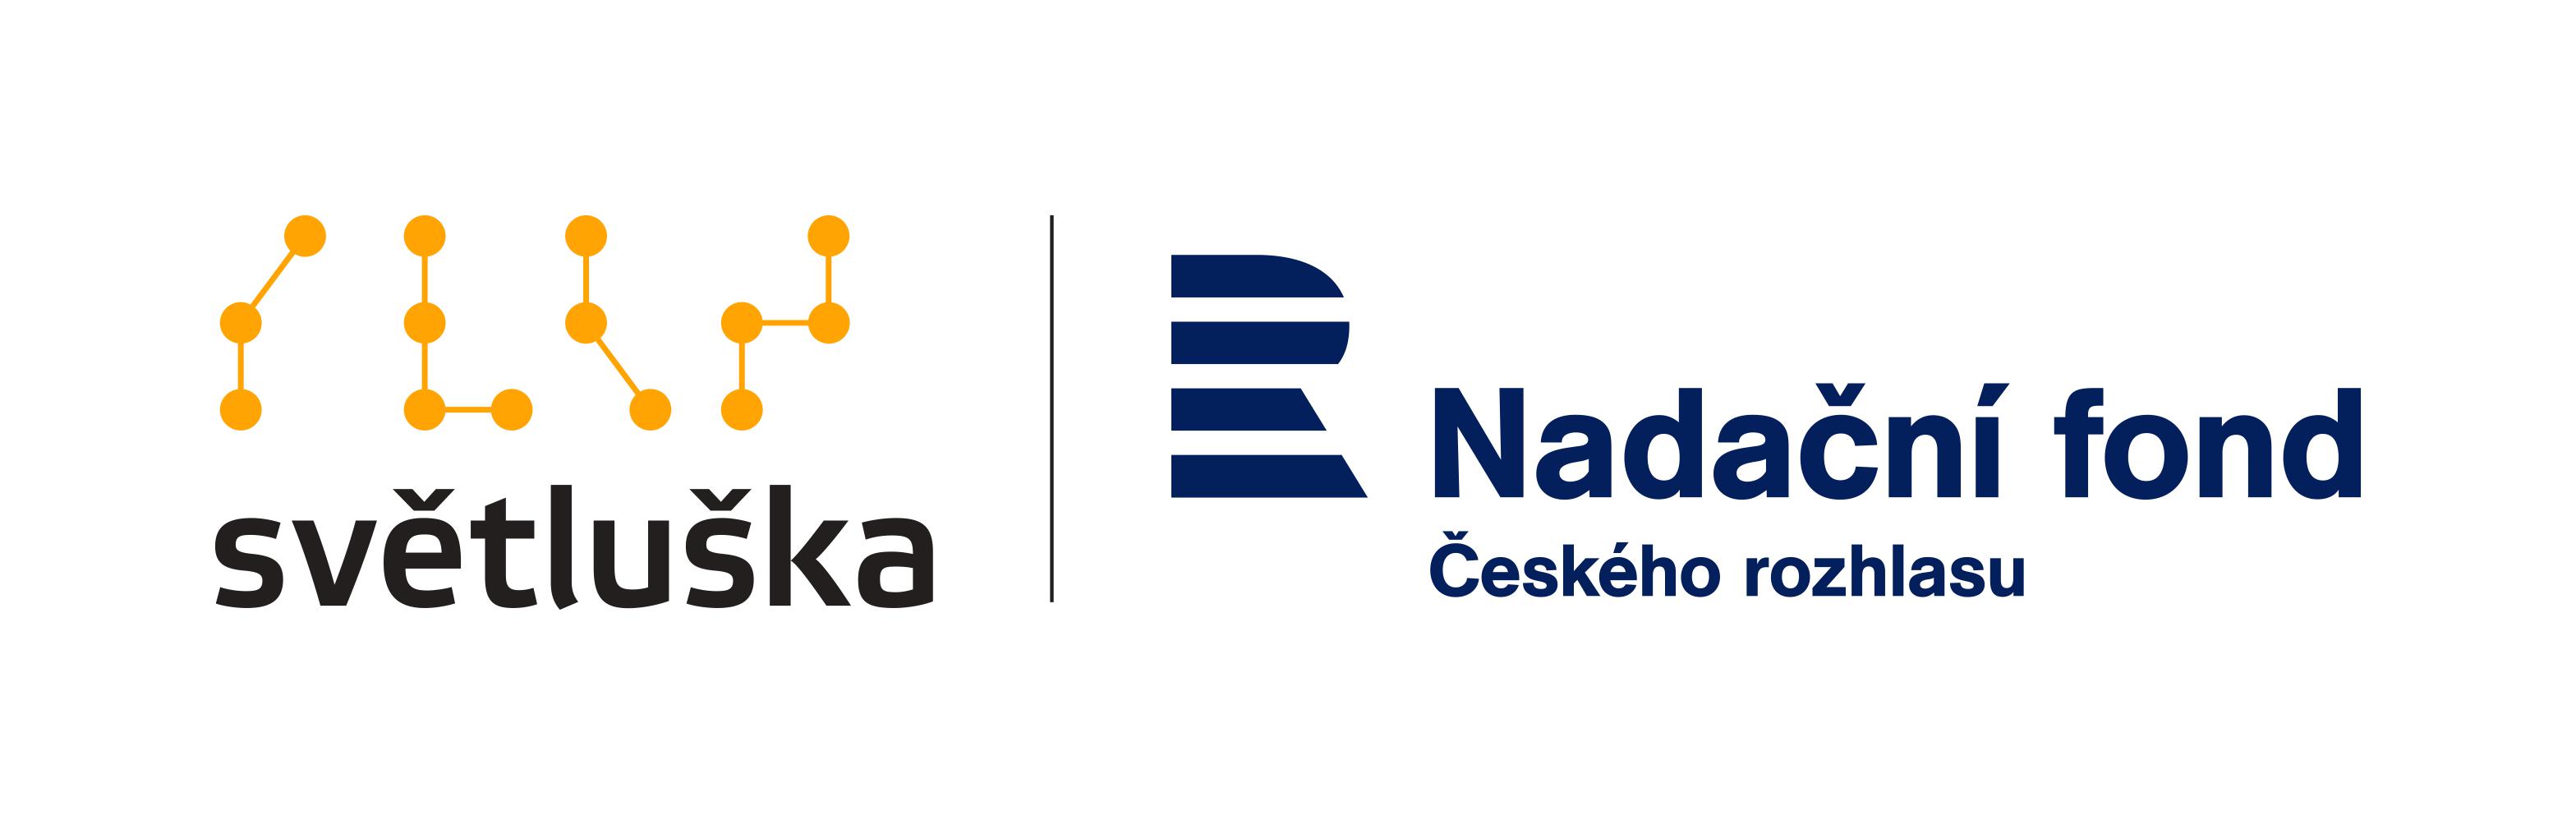 logo Nadační fond Českého rozhlasu a Světluška